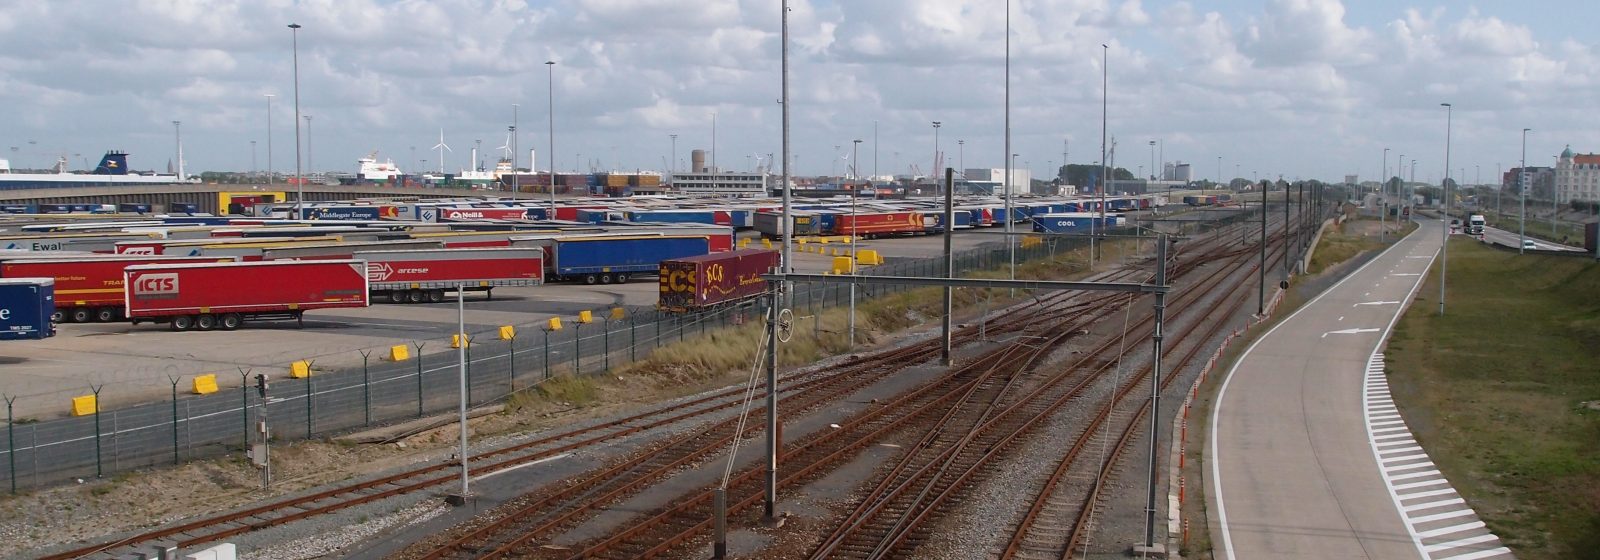 Terminal P&O Ferries op westelijke strekdam Zeebrugge